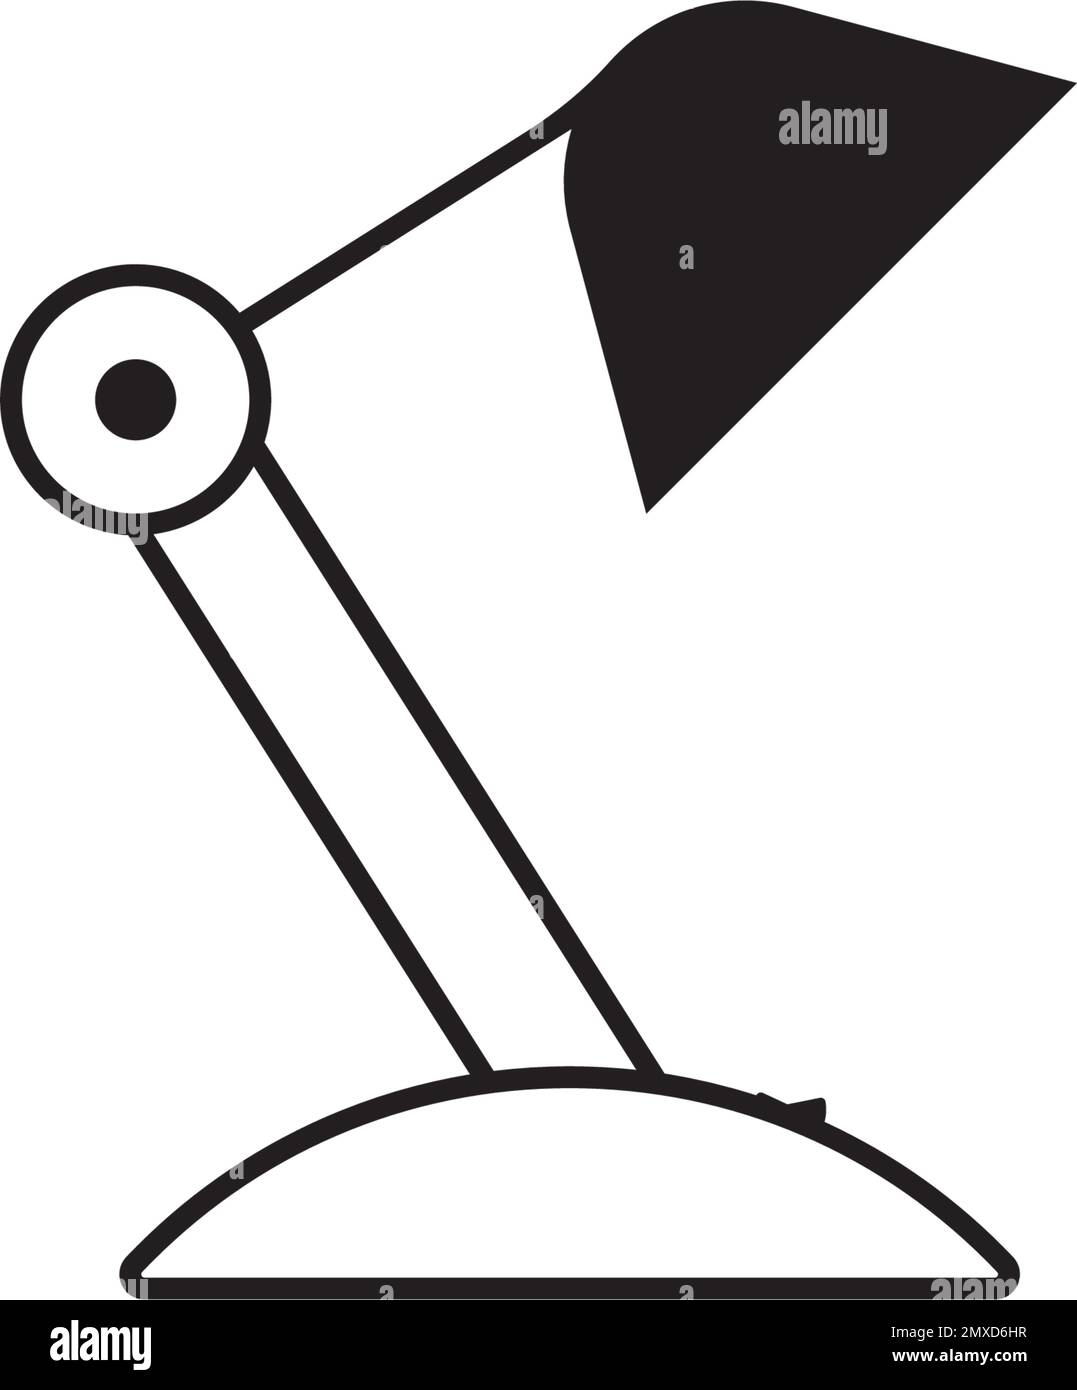 Disegno dell'illustrazione vettoriale dell'icona della lampada da tavolo. Illustrazione Vettoriale